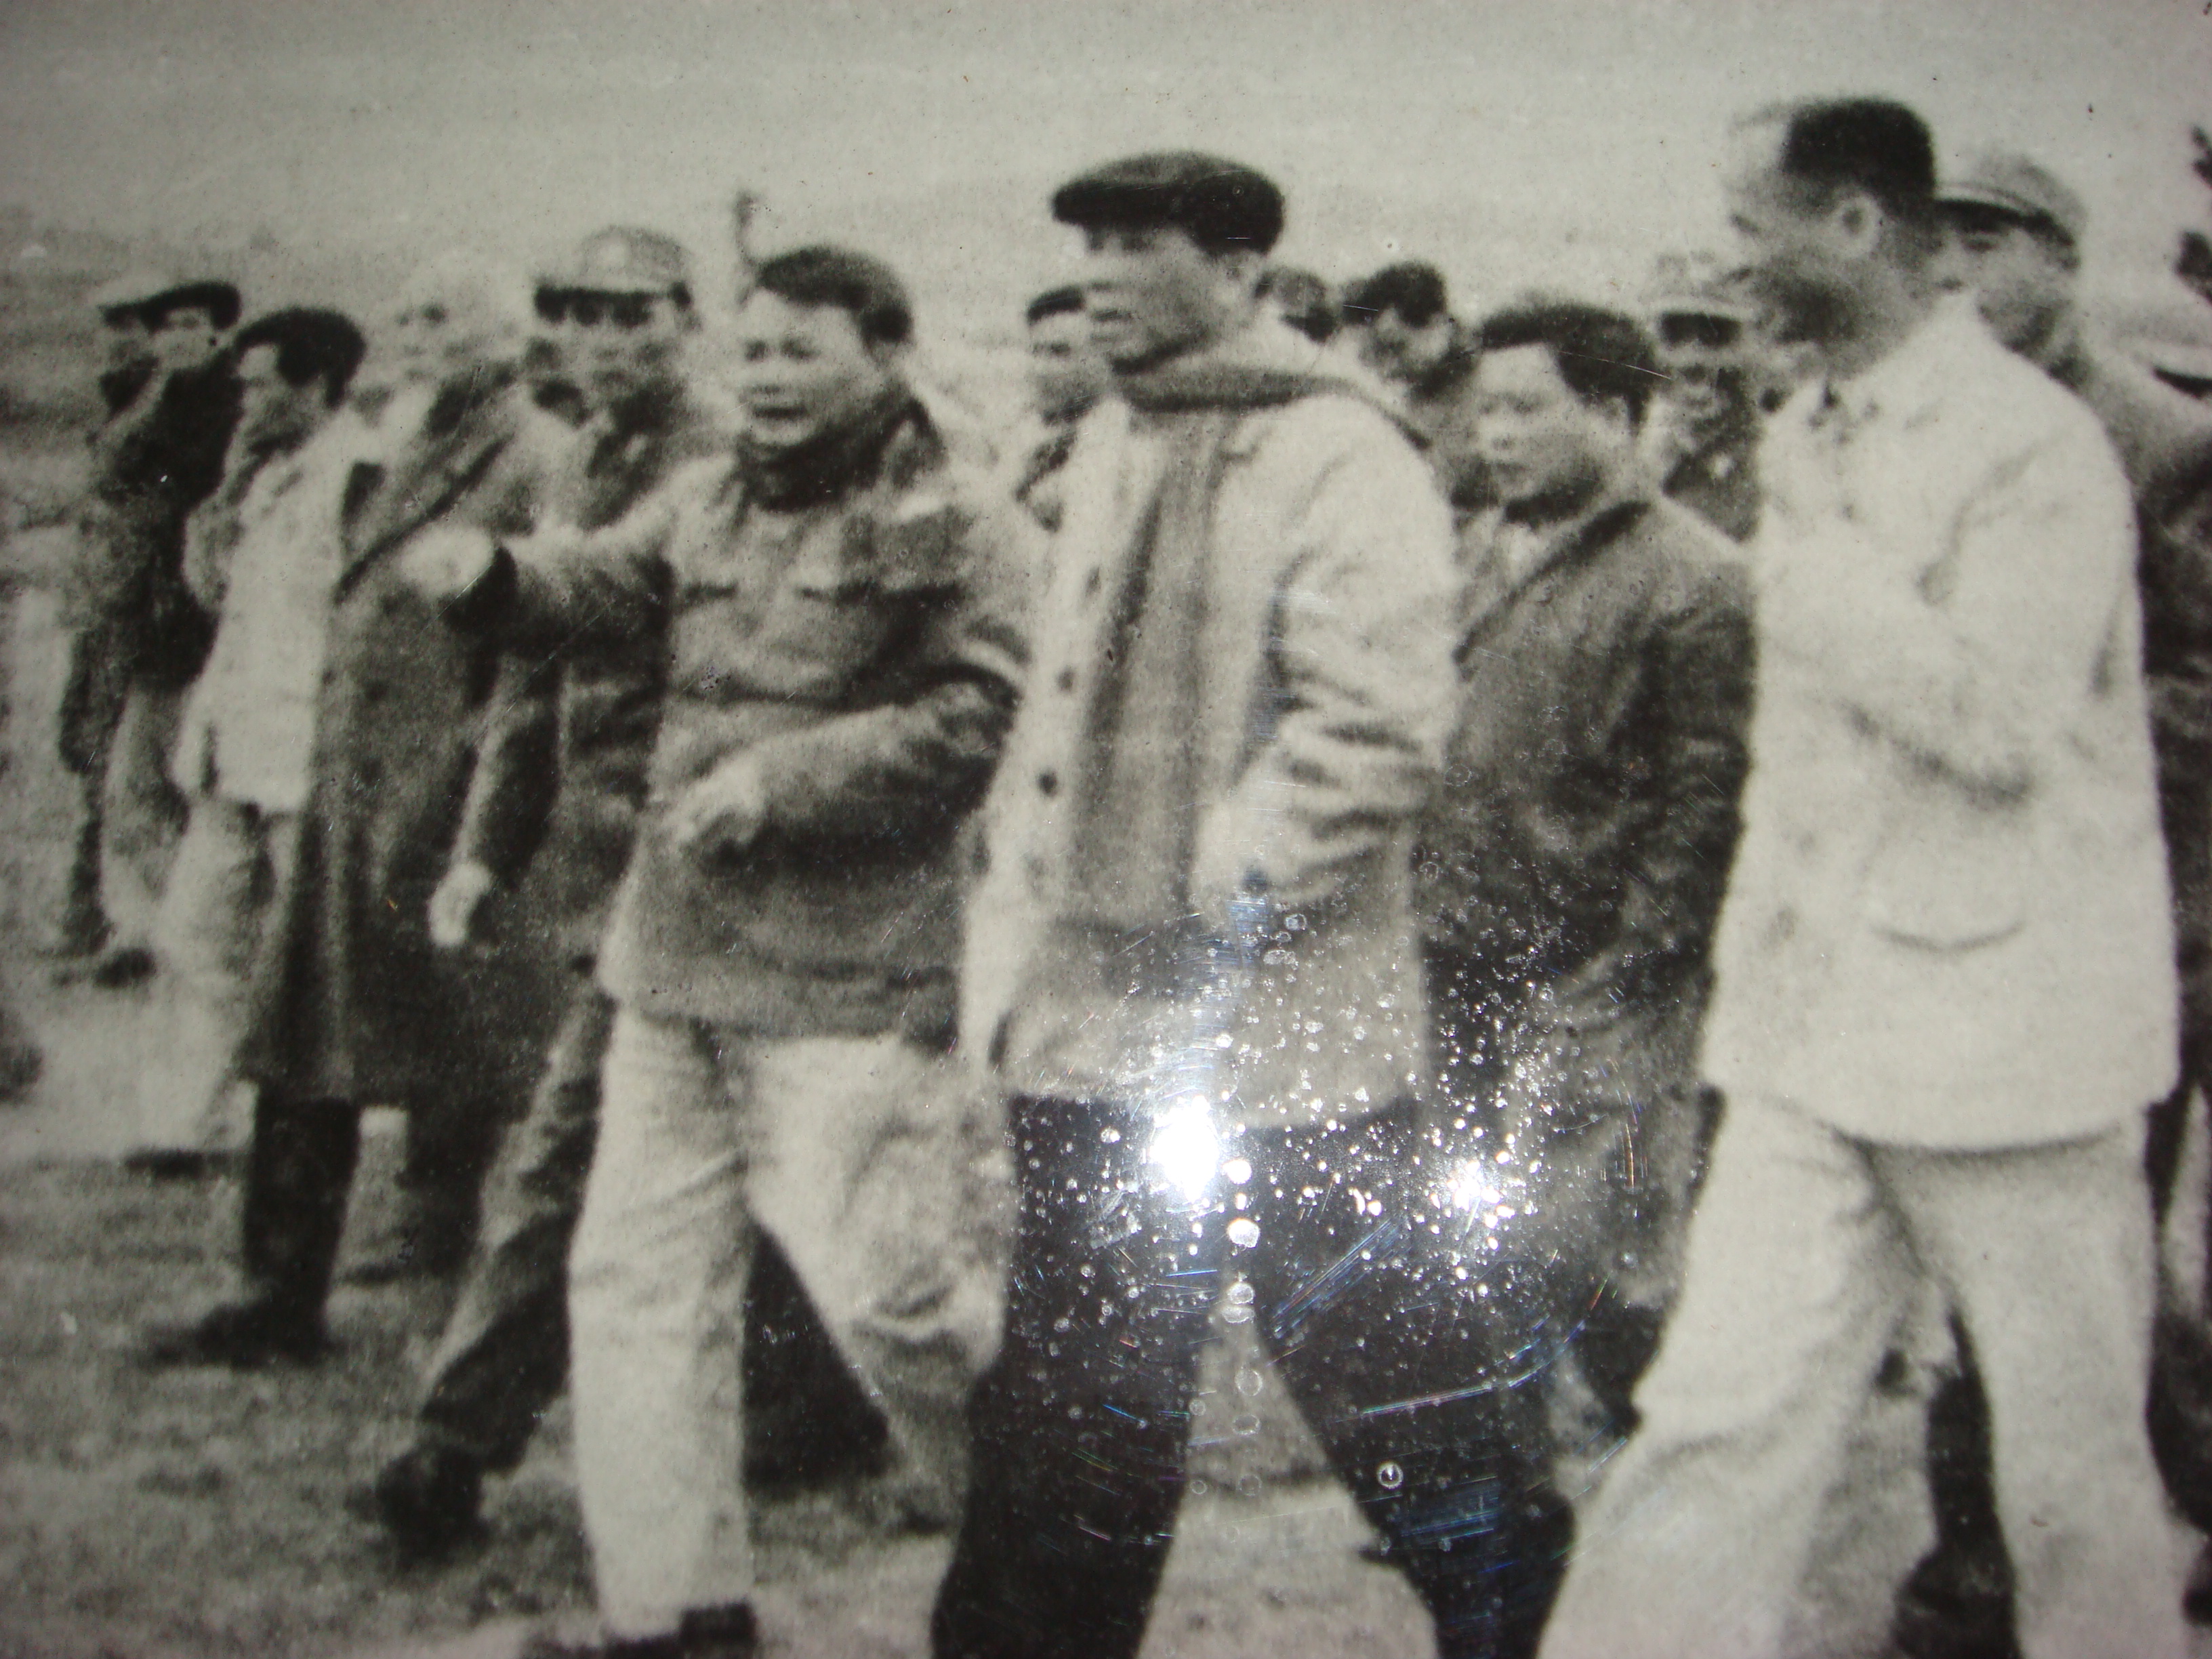 Đ/c Lê Duẩn, Tổng Bí thư Trung ương Đảng (thứ 2 phải qua) cùng với đ/c Nguyễn Hữu Đợi, Bí thư Huyện ủy Quỳnh Lưu (thứ 3 phải qua) thăm mô hình kinh tế Quỳnh Lưu - năm 1976.